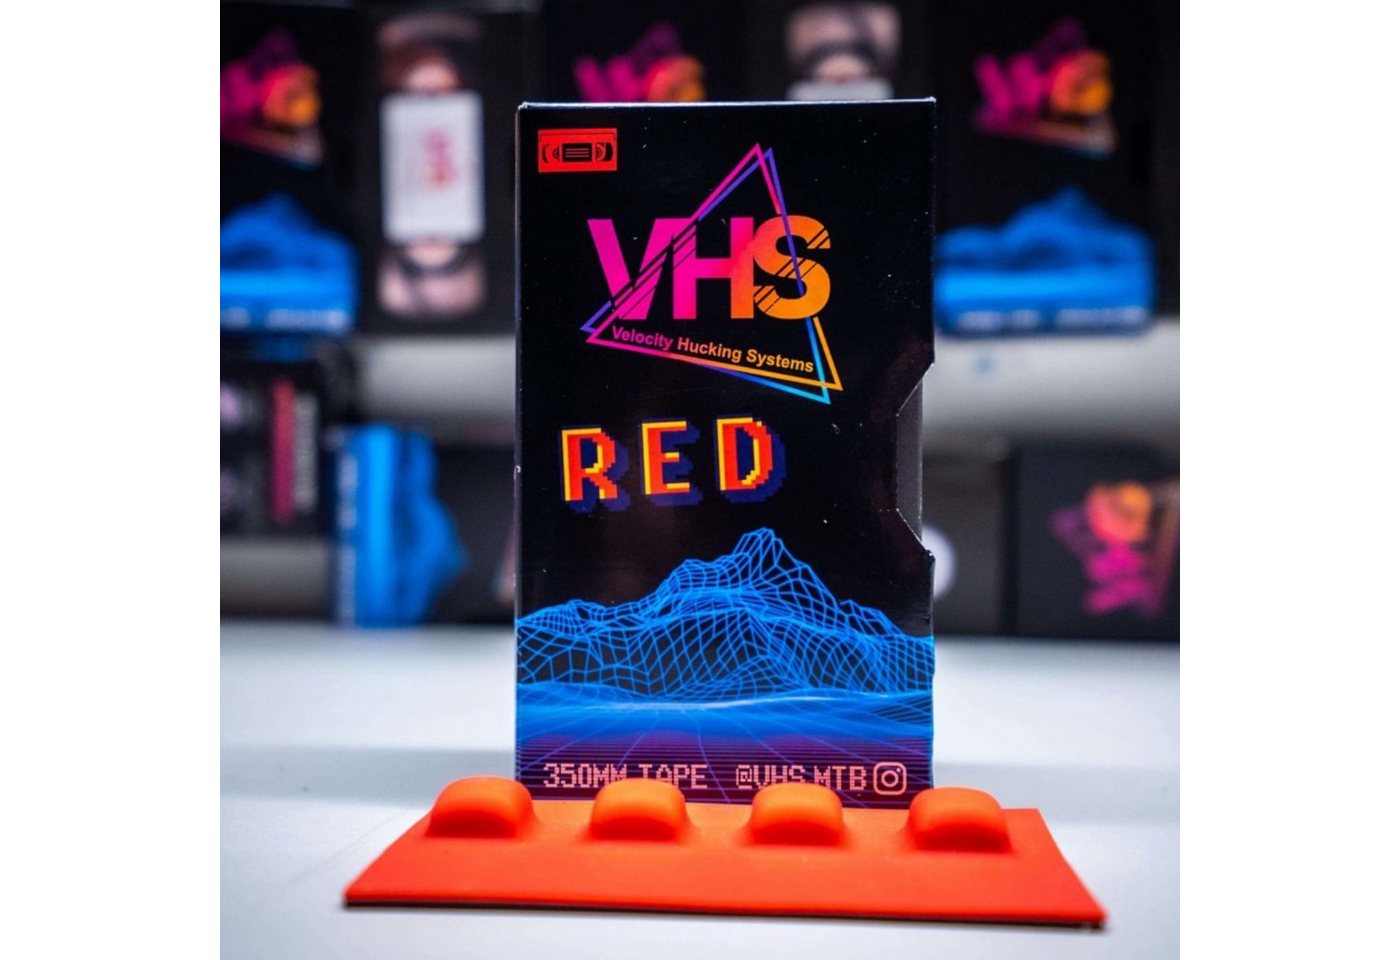 VHS Rahmenschutzband VHS 2.0 Slapper Tape Fahrrad Kettenstrebenschutz Selbstklebend Rot von VHS